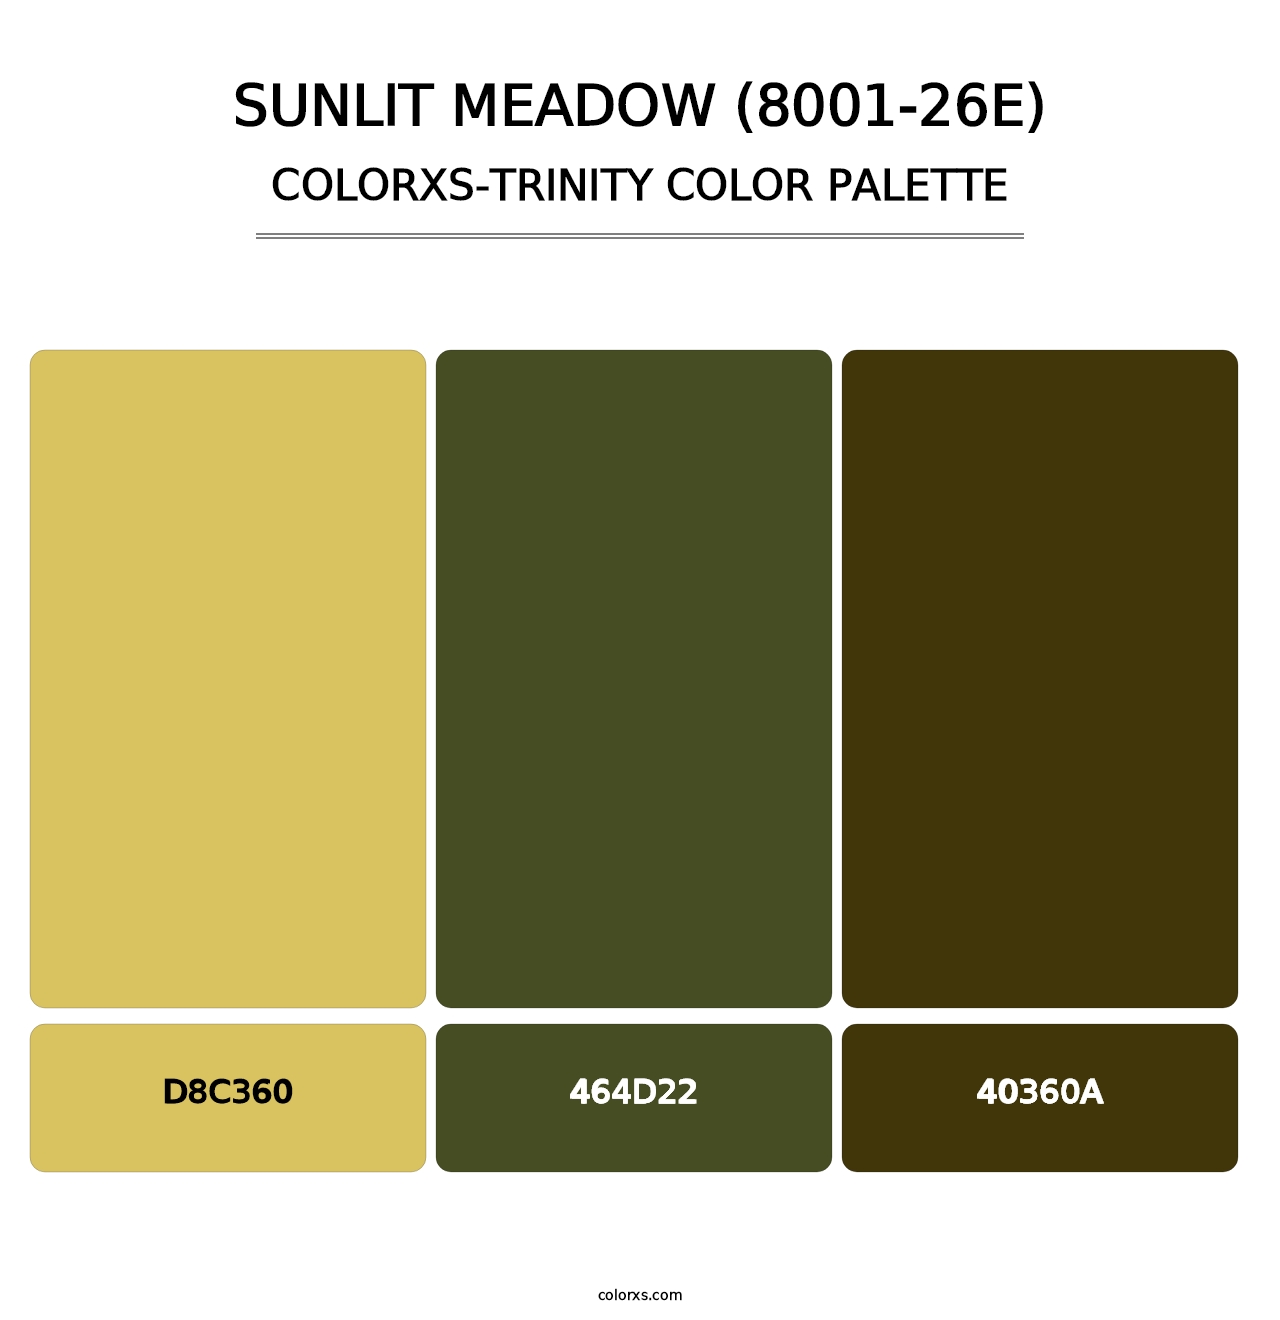 Sunlit Meadow (8001-26E) - Colorxs Trinity Palette